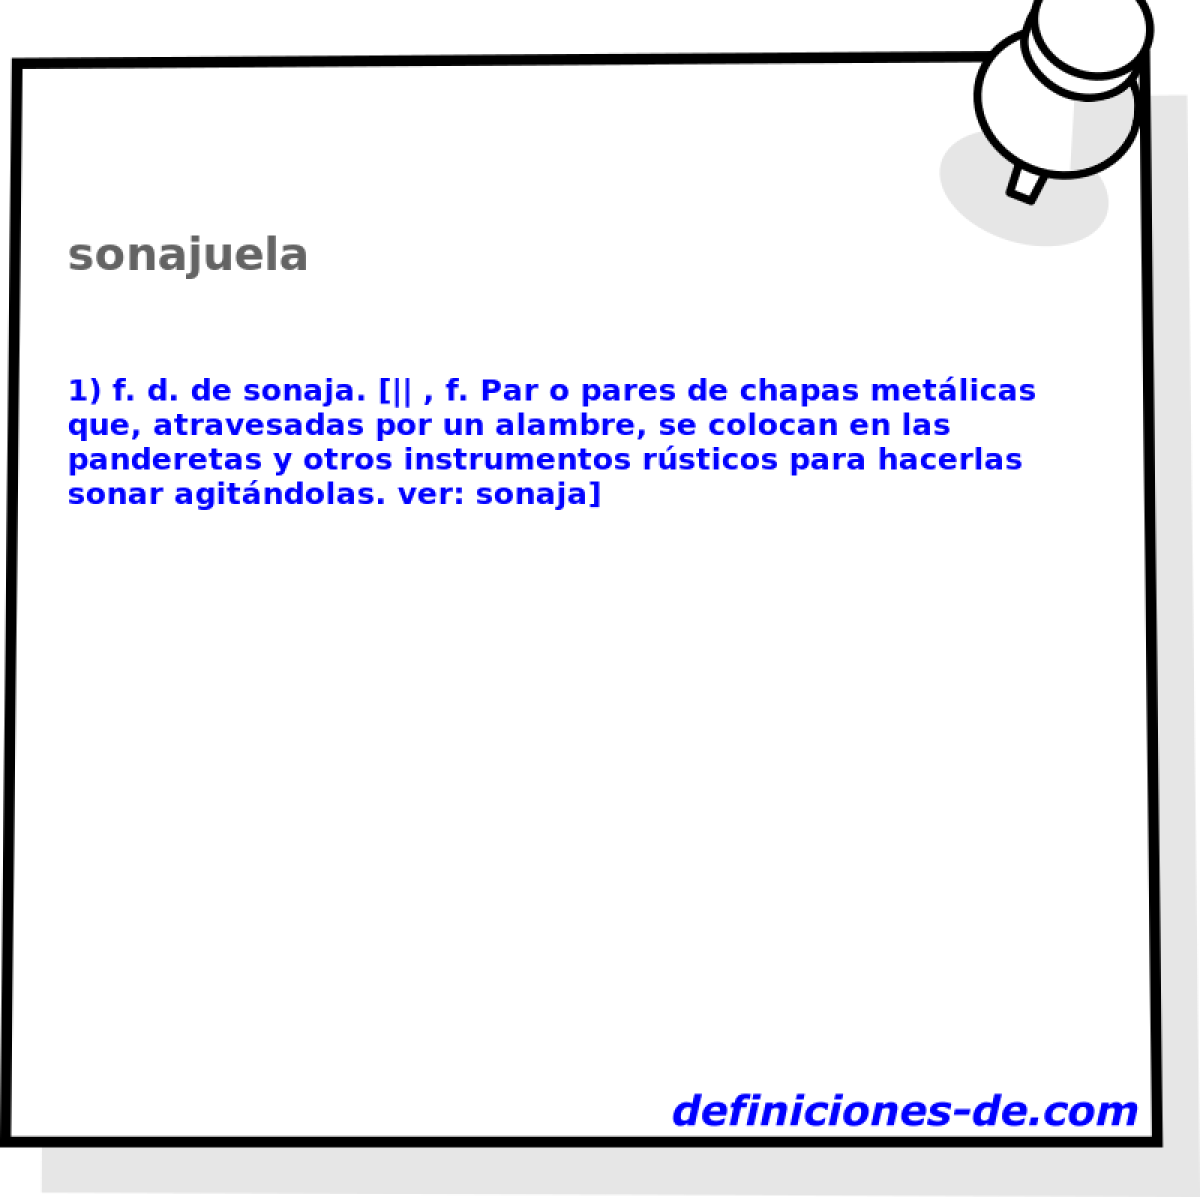 sonajuela 